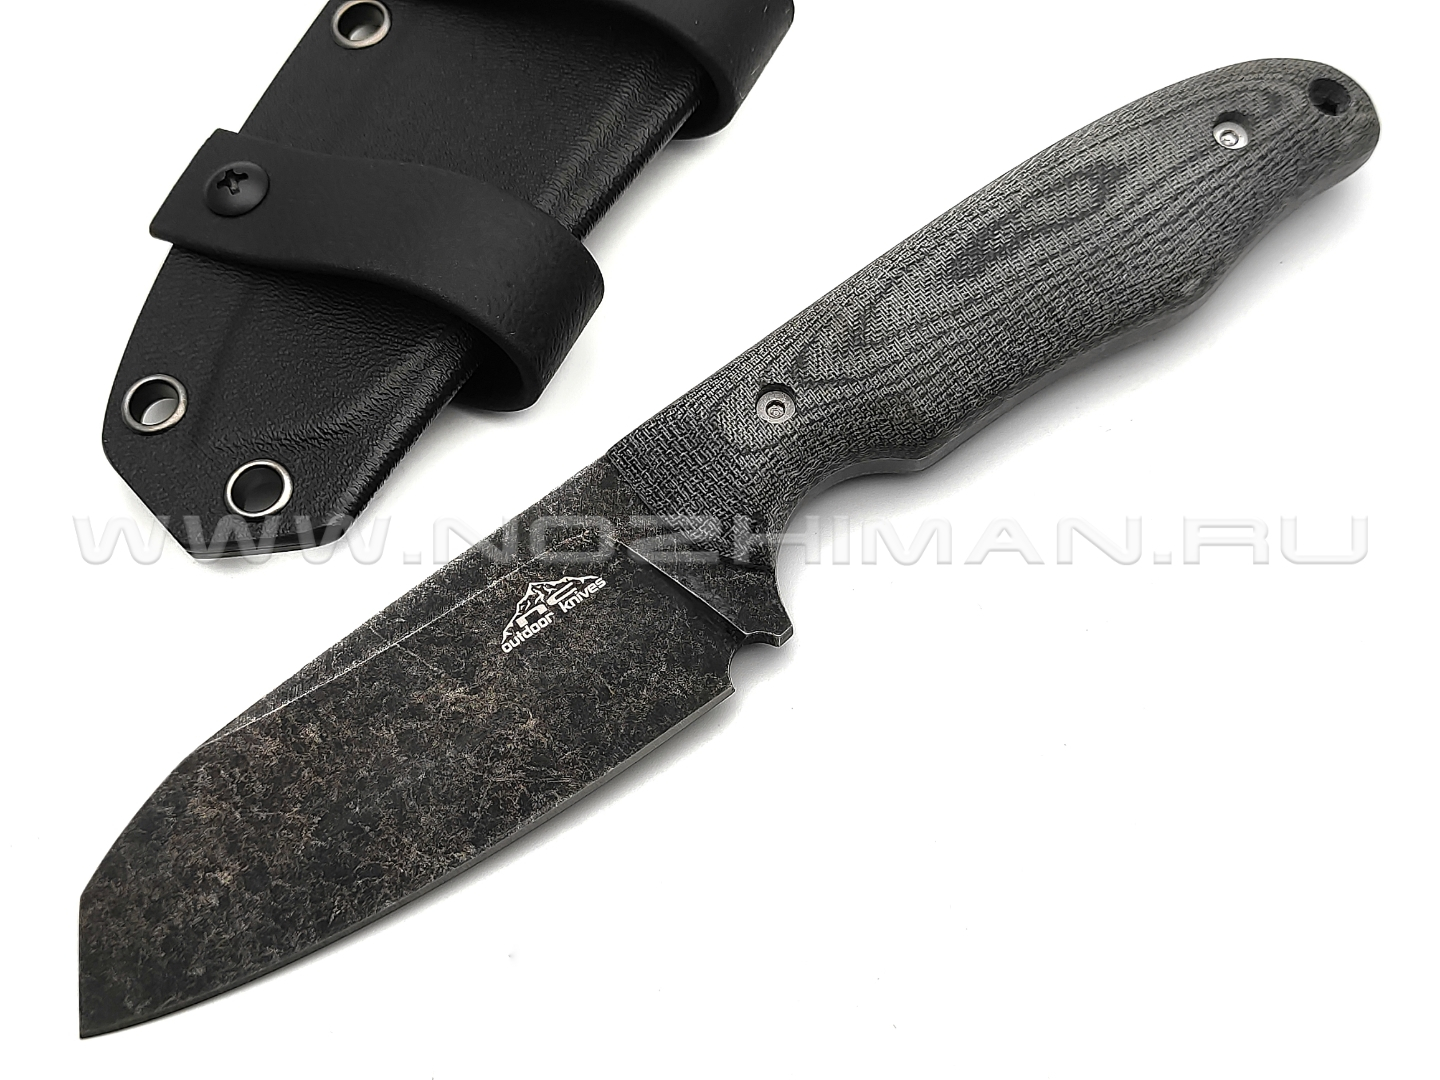 N.C.Custom нож Tracker сталь N690 blackwash, рукоять микарта, ножны kydex